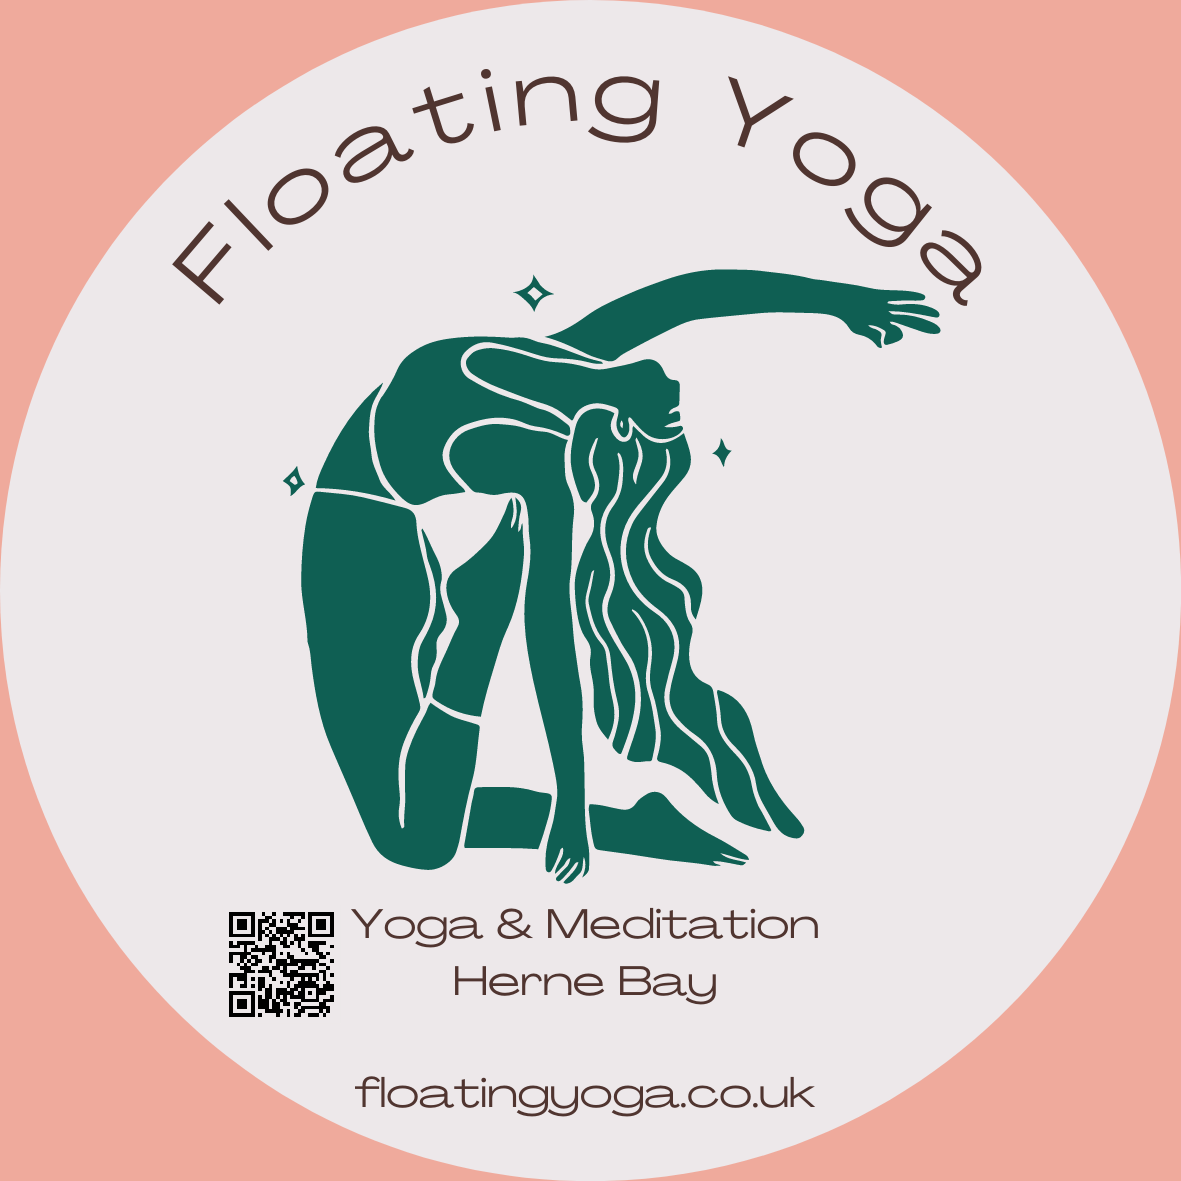 Floating Yoga